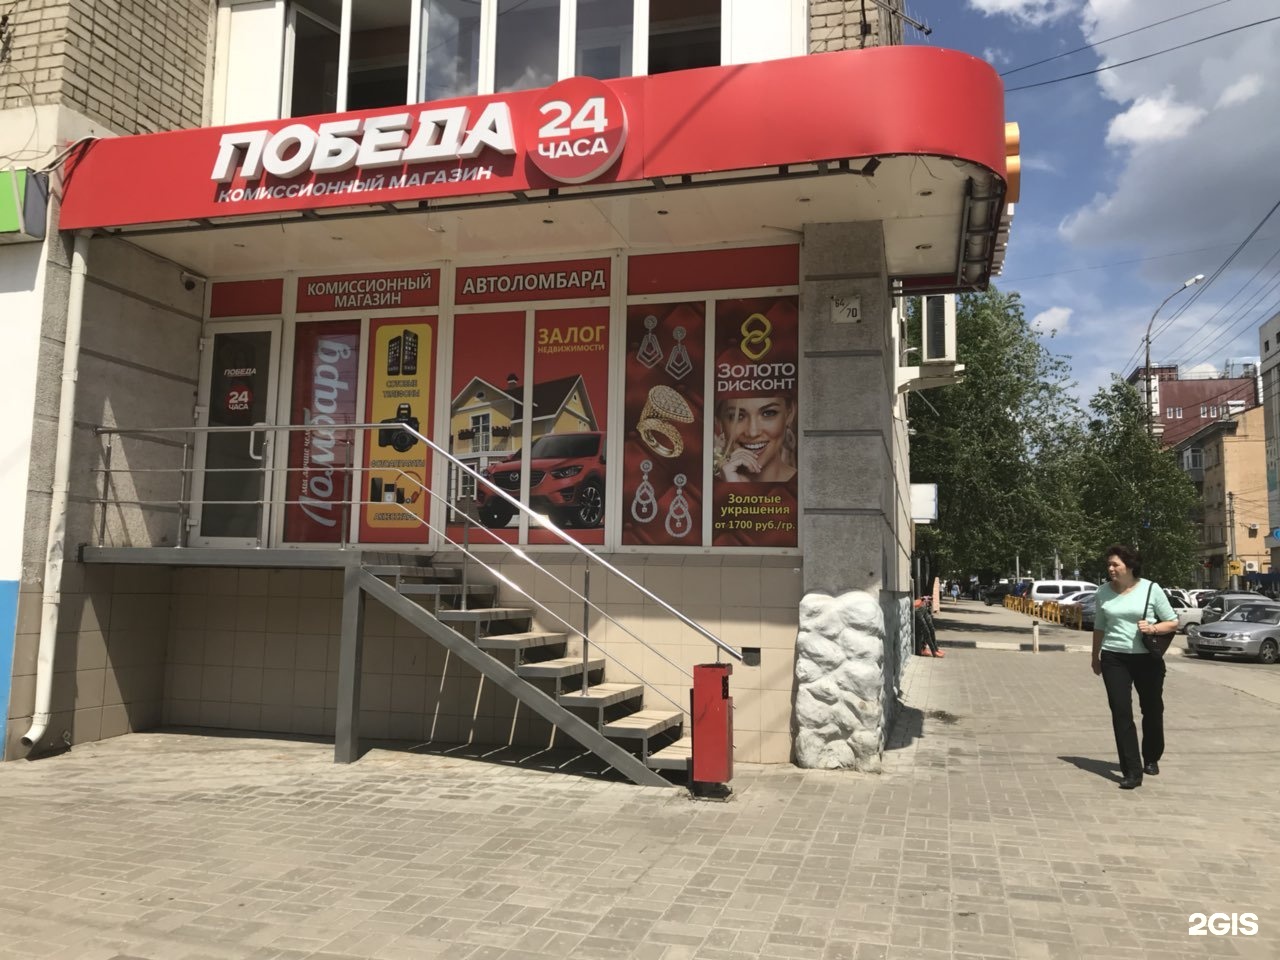 Победа Комиссионный Магазин Саратов Советская Телефон